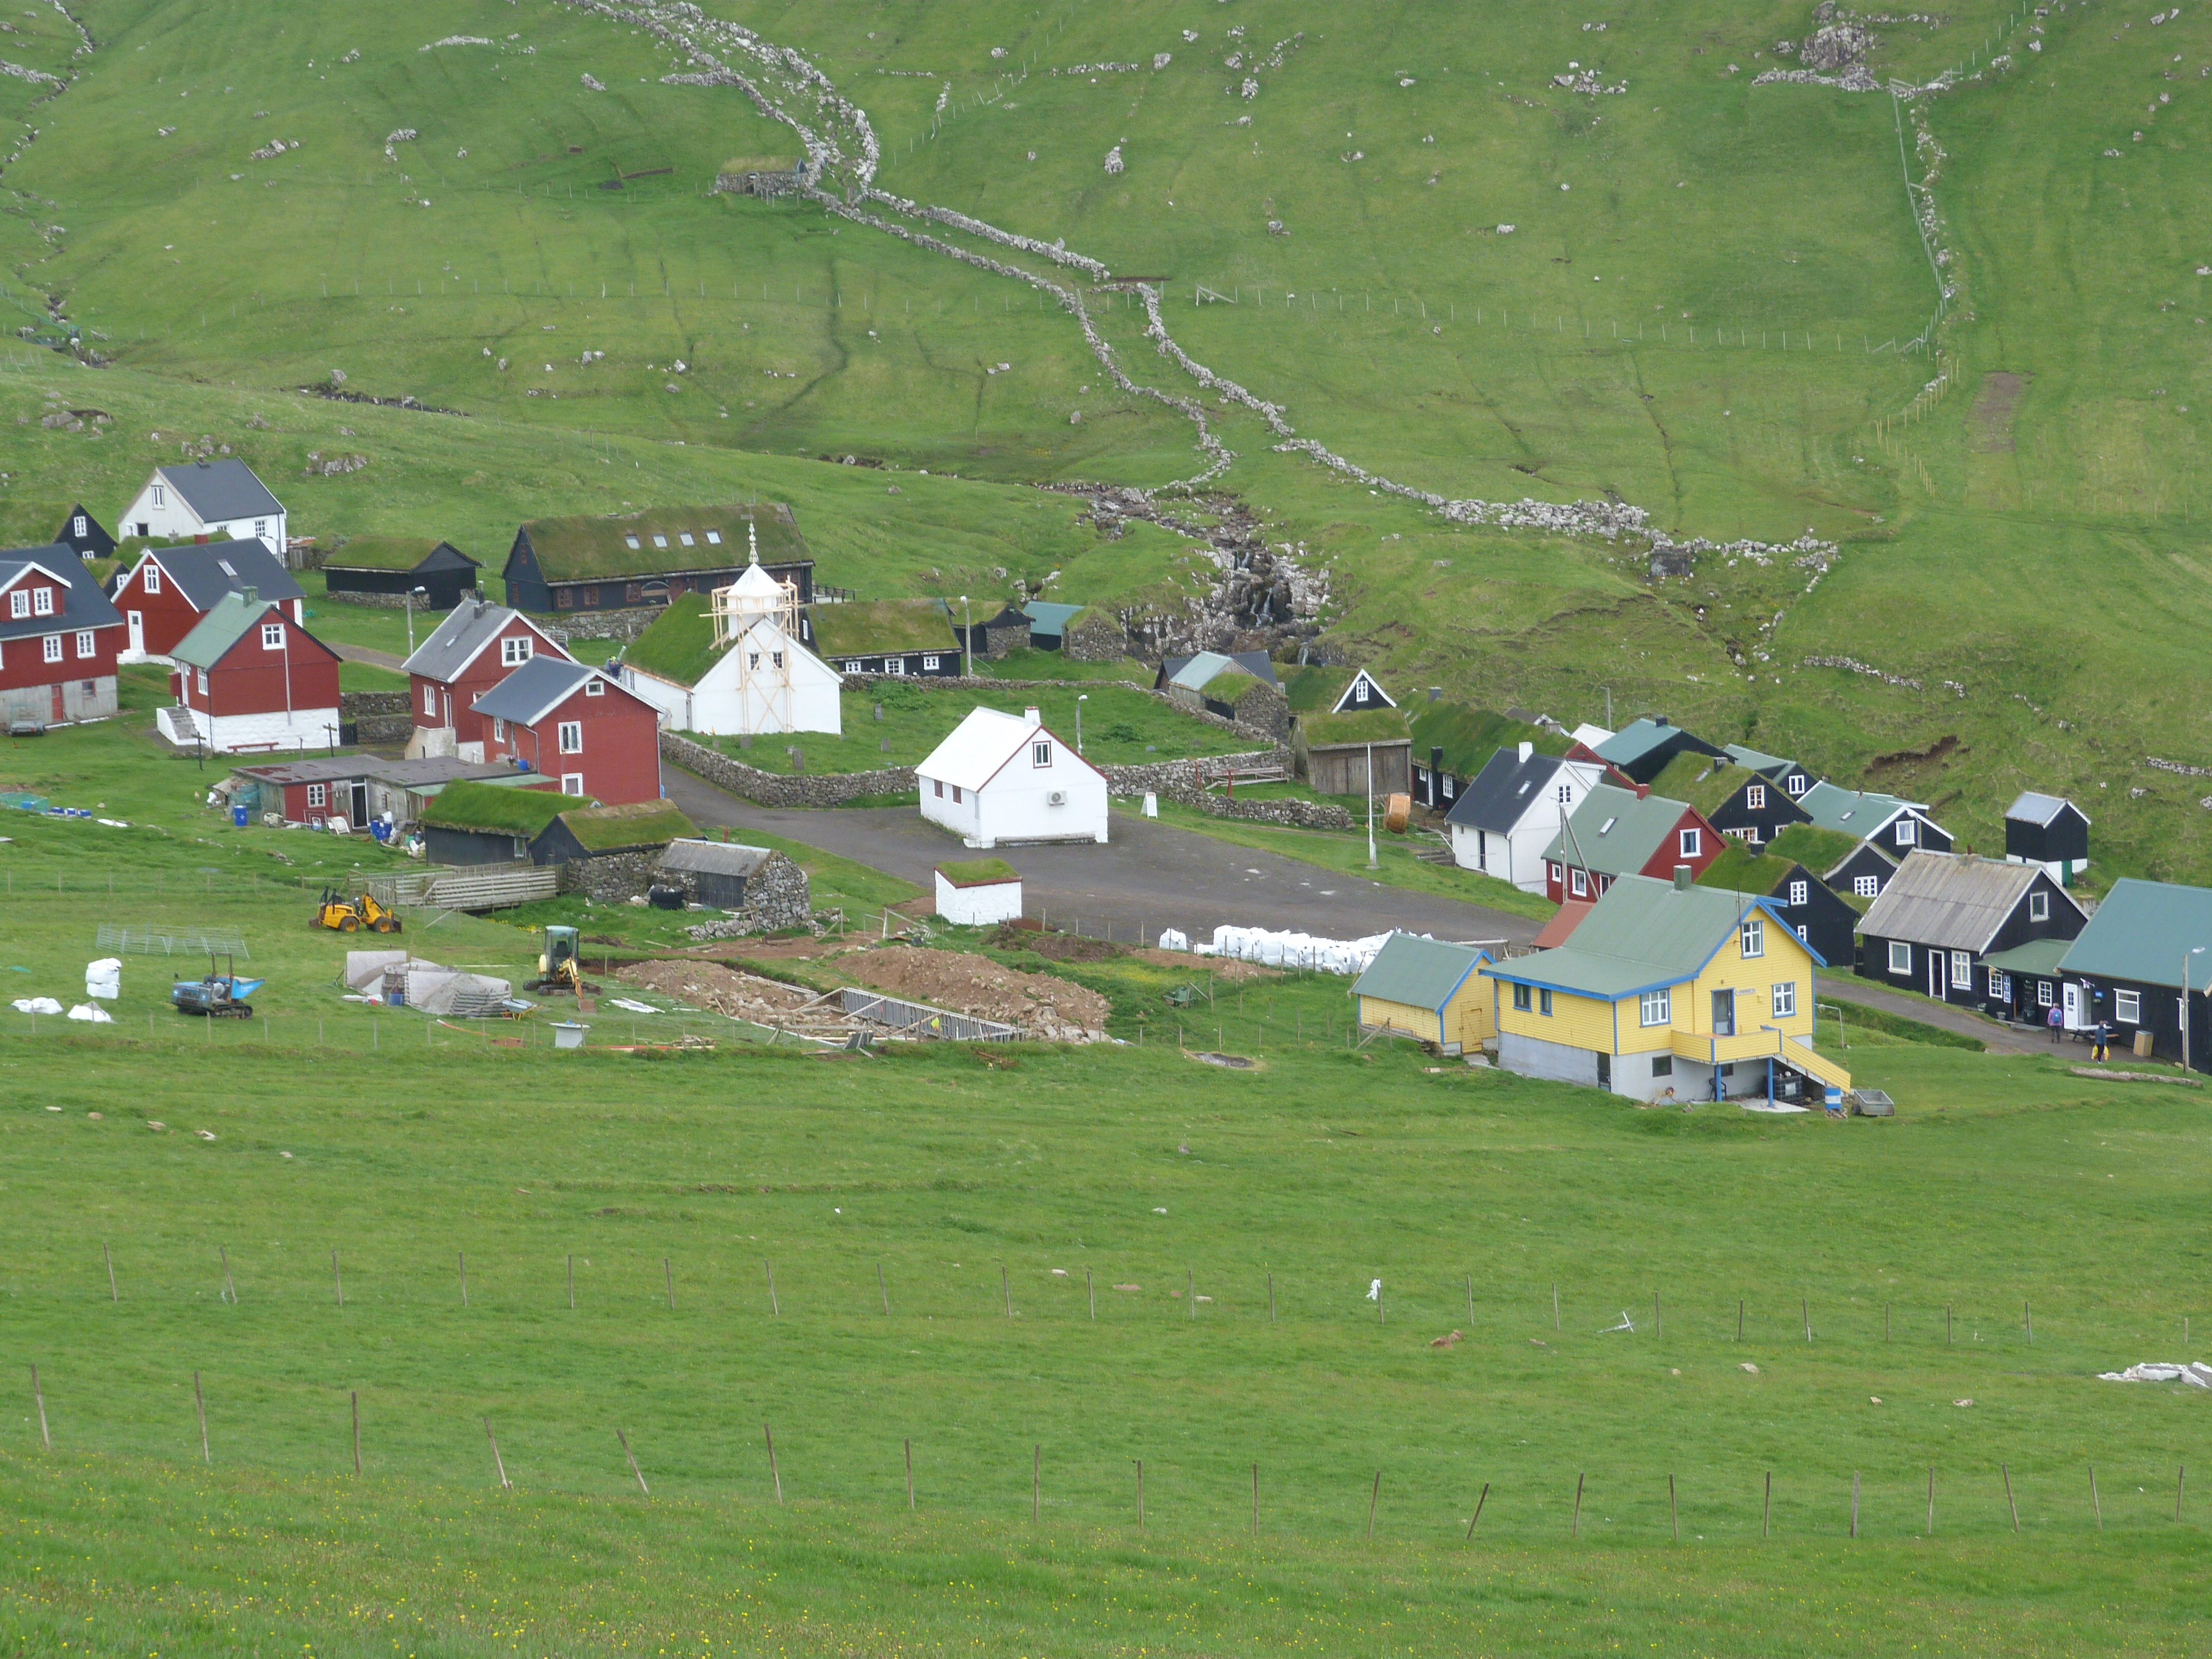 Diario de Viaje Islas Feroe - El Reino de Thor - Blogs of Denmark - DIA 2 - Mykines, el hogar de los frailecillos (4)